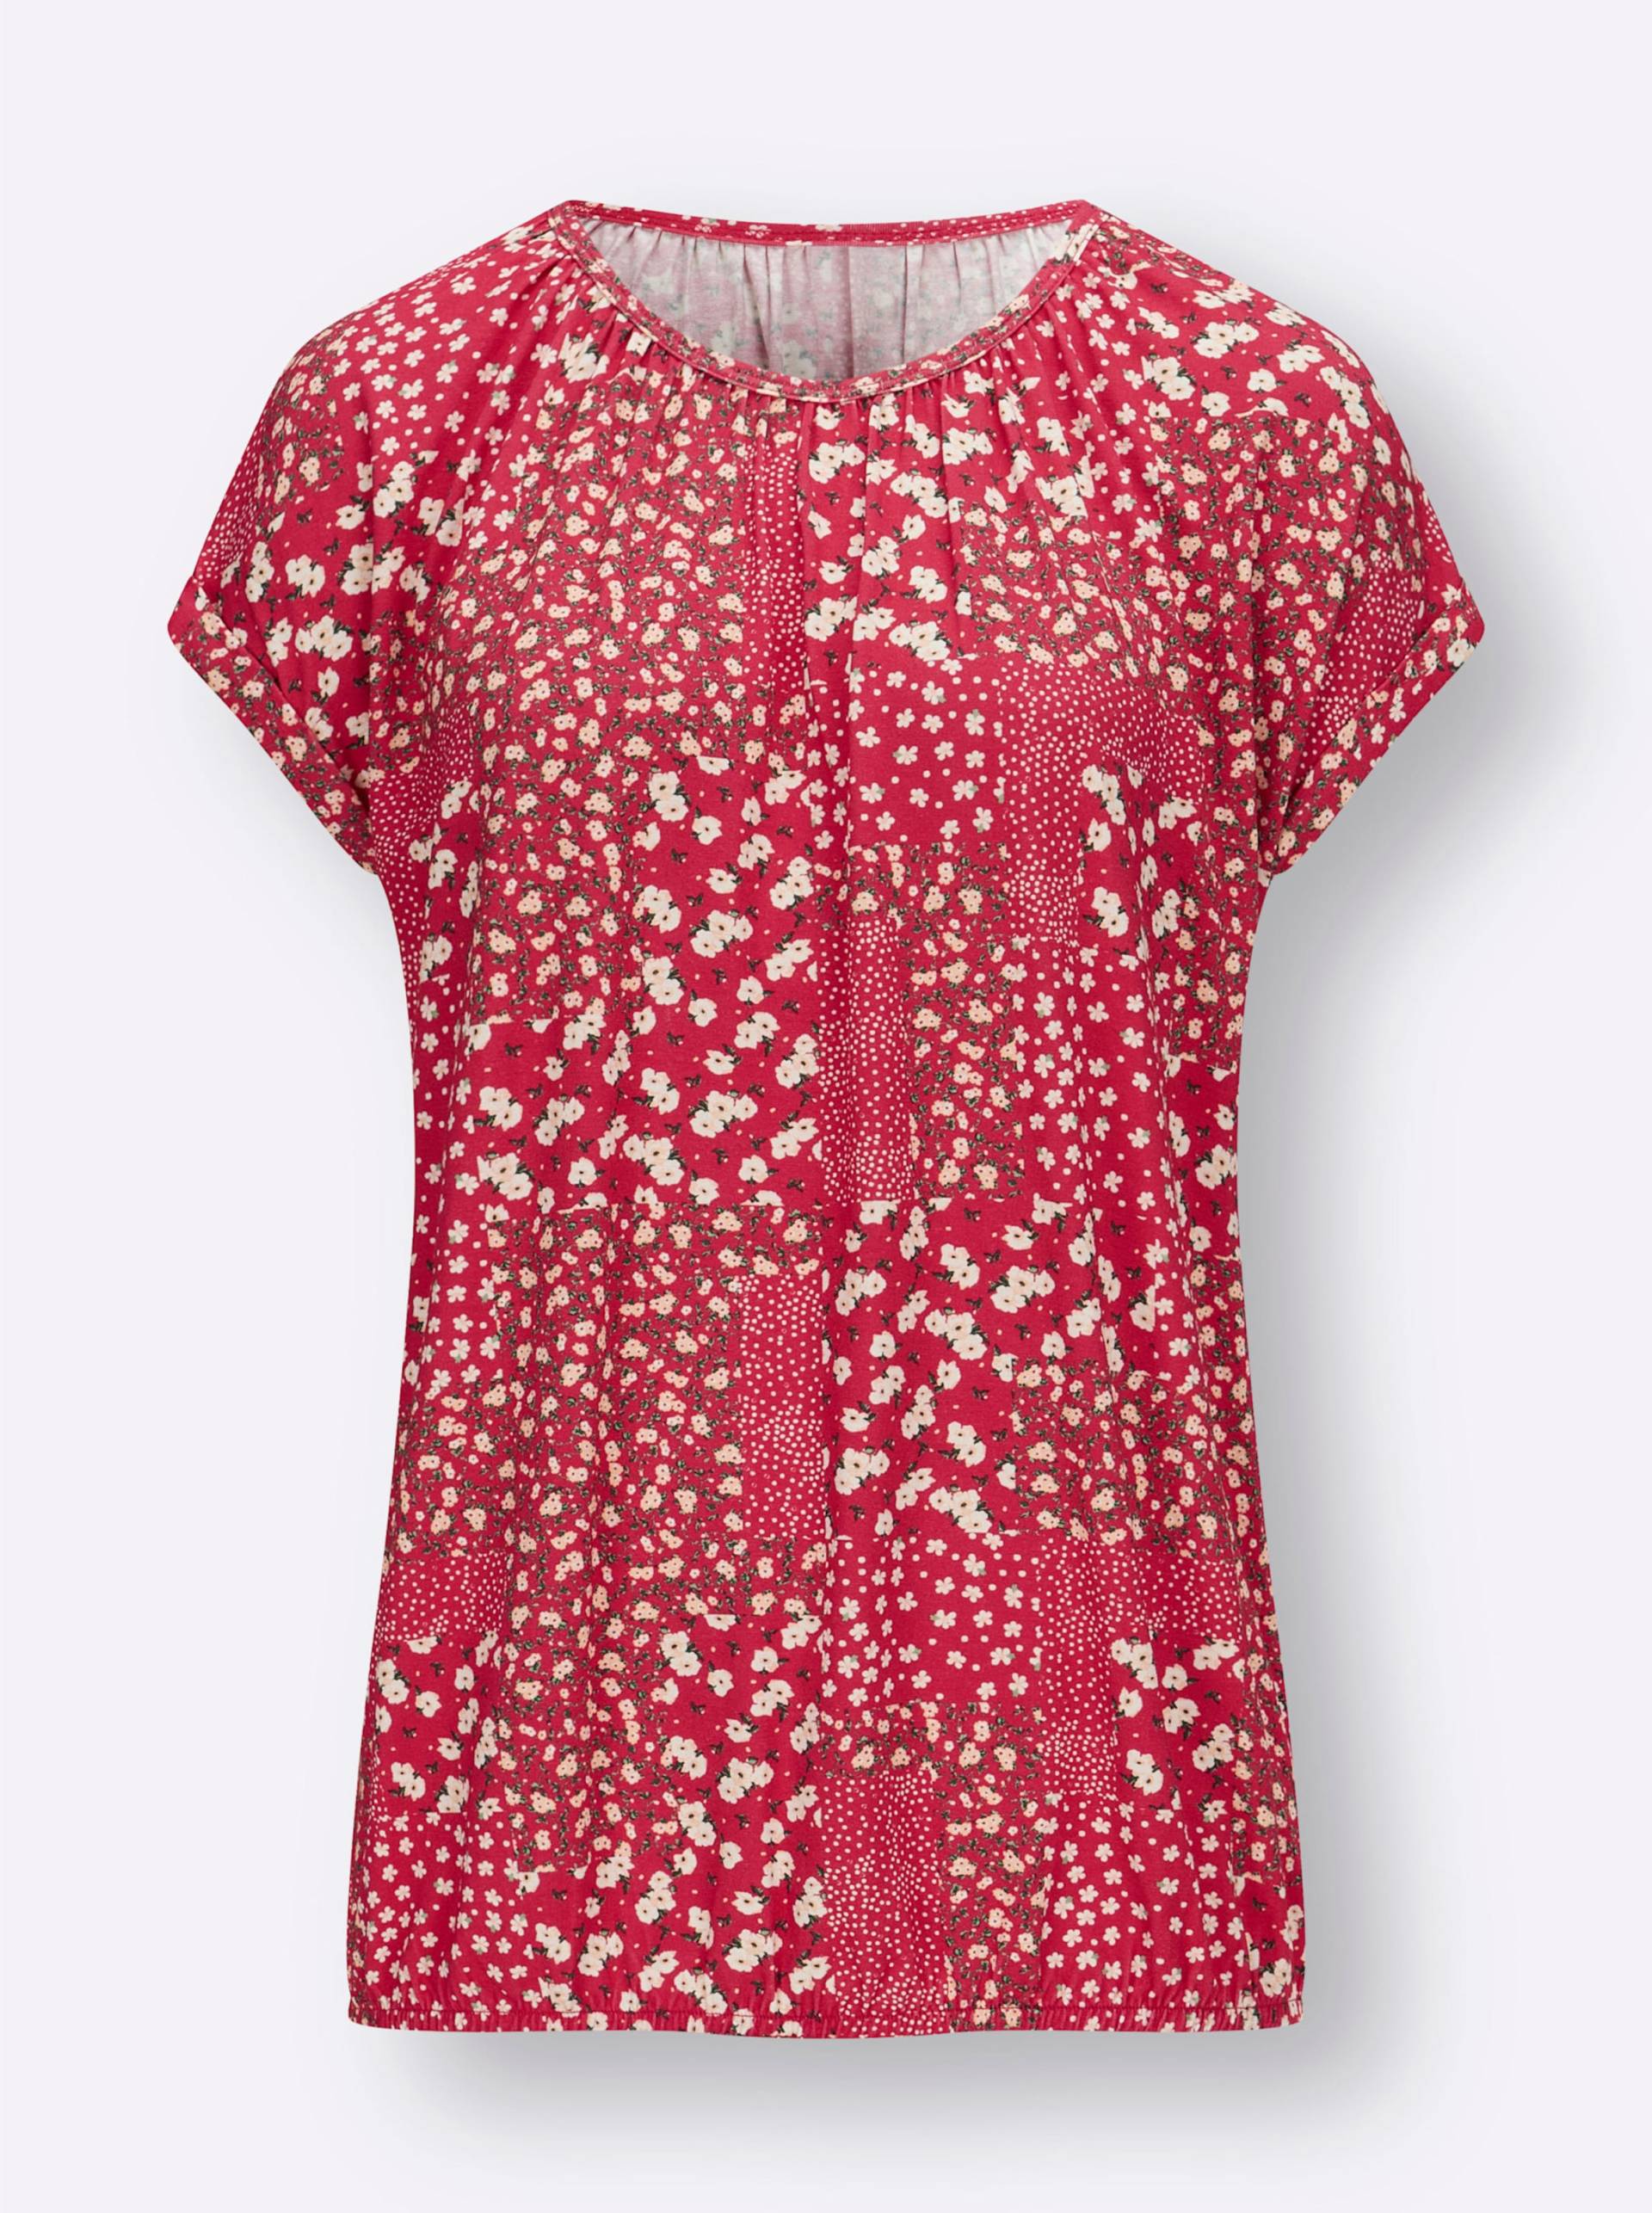 Druck-Shirt in erdbeere-champagner-bedruckt von heine